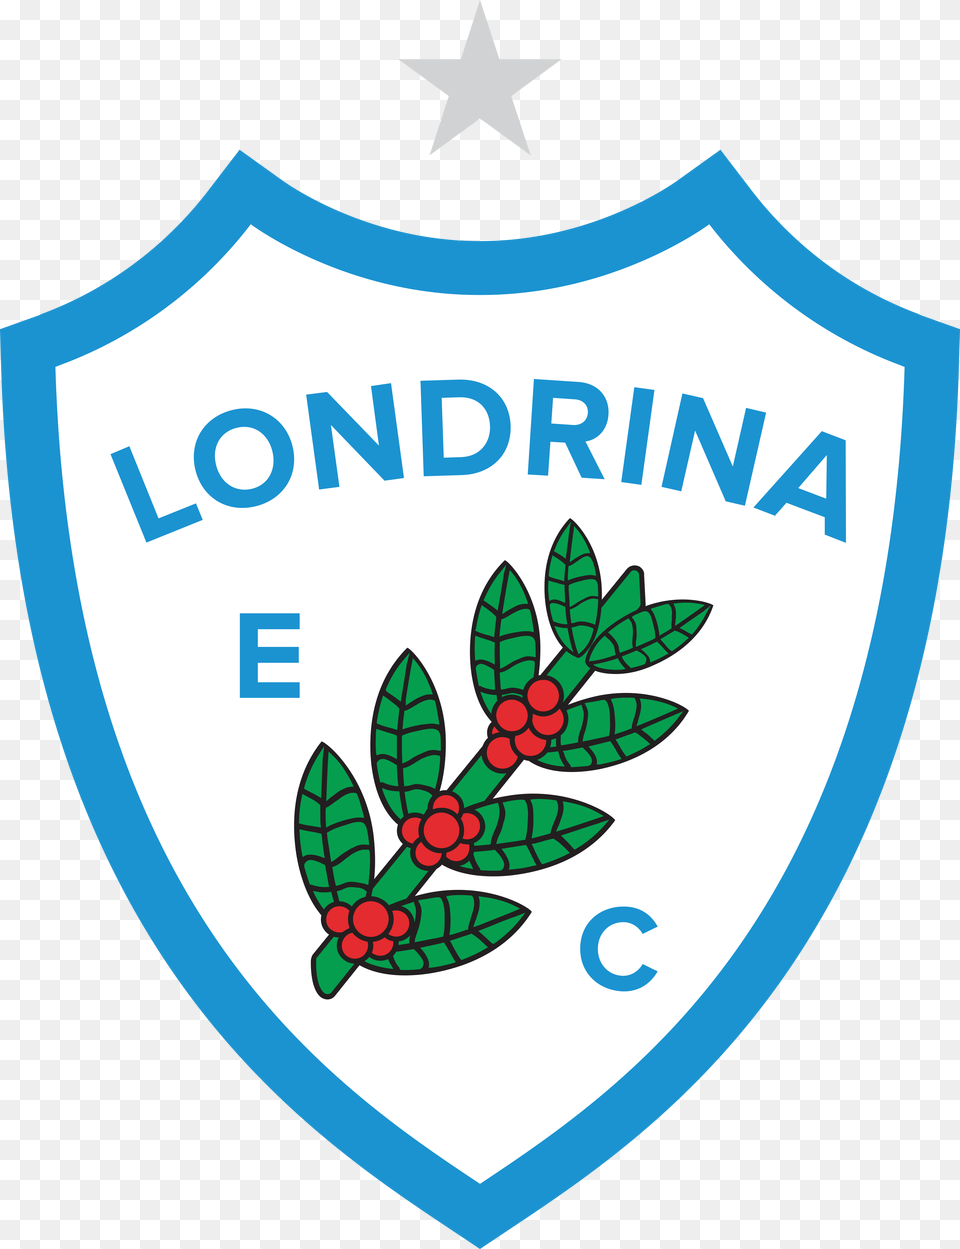 Clique Na Imagem Que Deseja Para Baixar O Logo Escudo Londrina Esporte Clube, Armor, Shield, Symbol Png Image